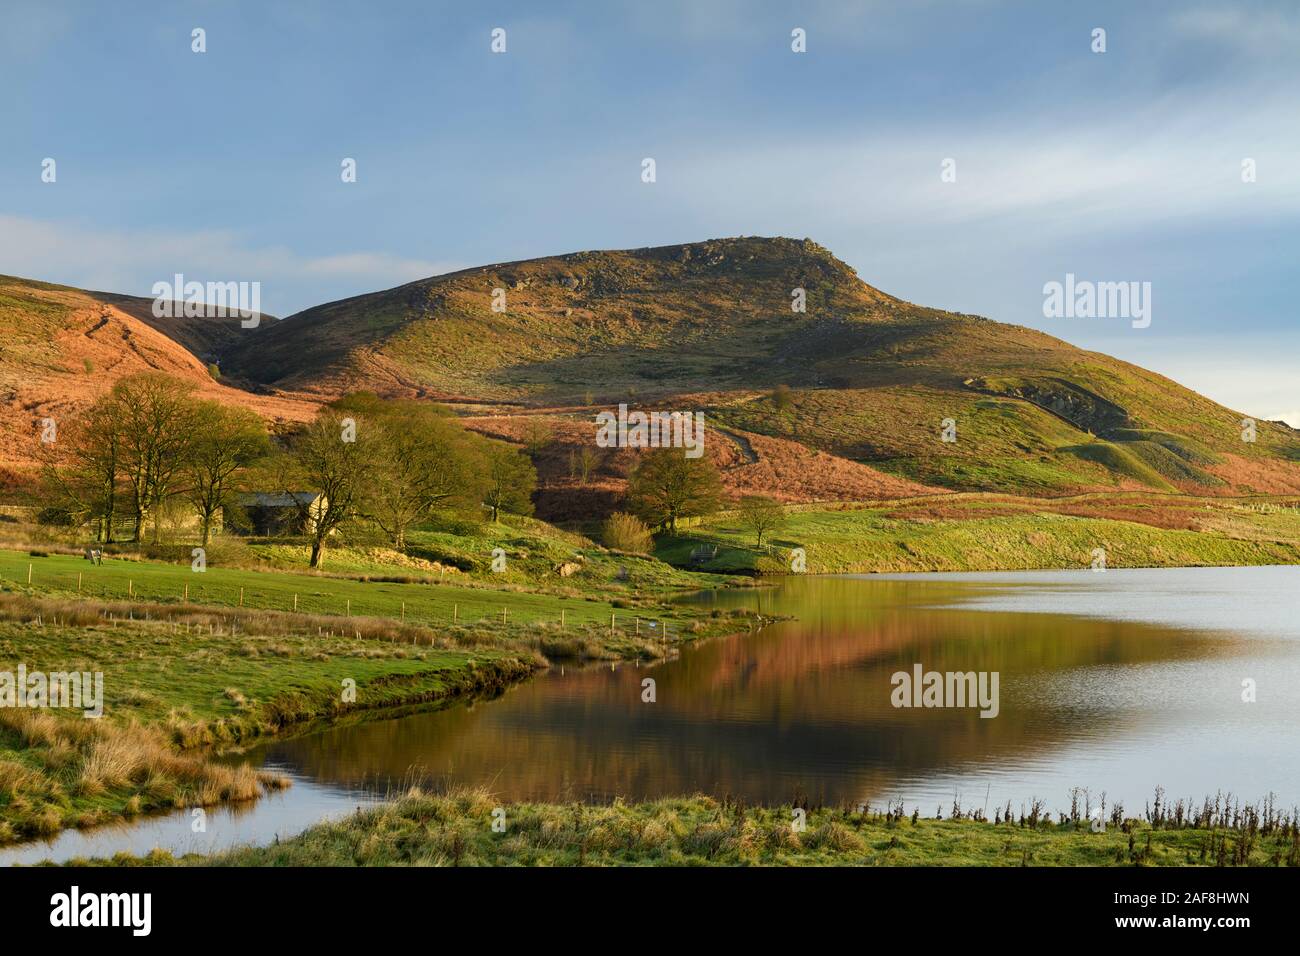 Szenische morgen ländliche Aussicht (embsay Reservoir, steilen sonnenbeschienenen Fells oder Mauren, Gipfel der hohen berggebieten Hill & Crag, blauer Himmel) - North Yorkshire, England, UK. Stockfoto